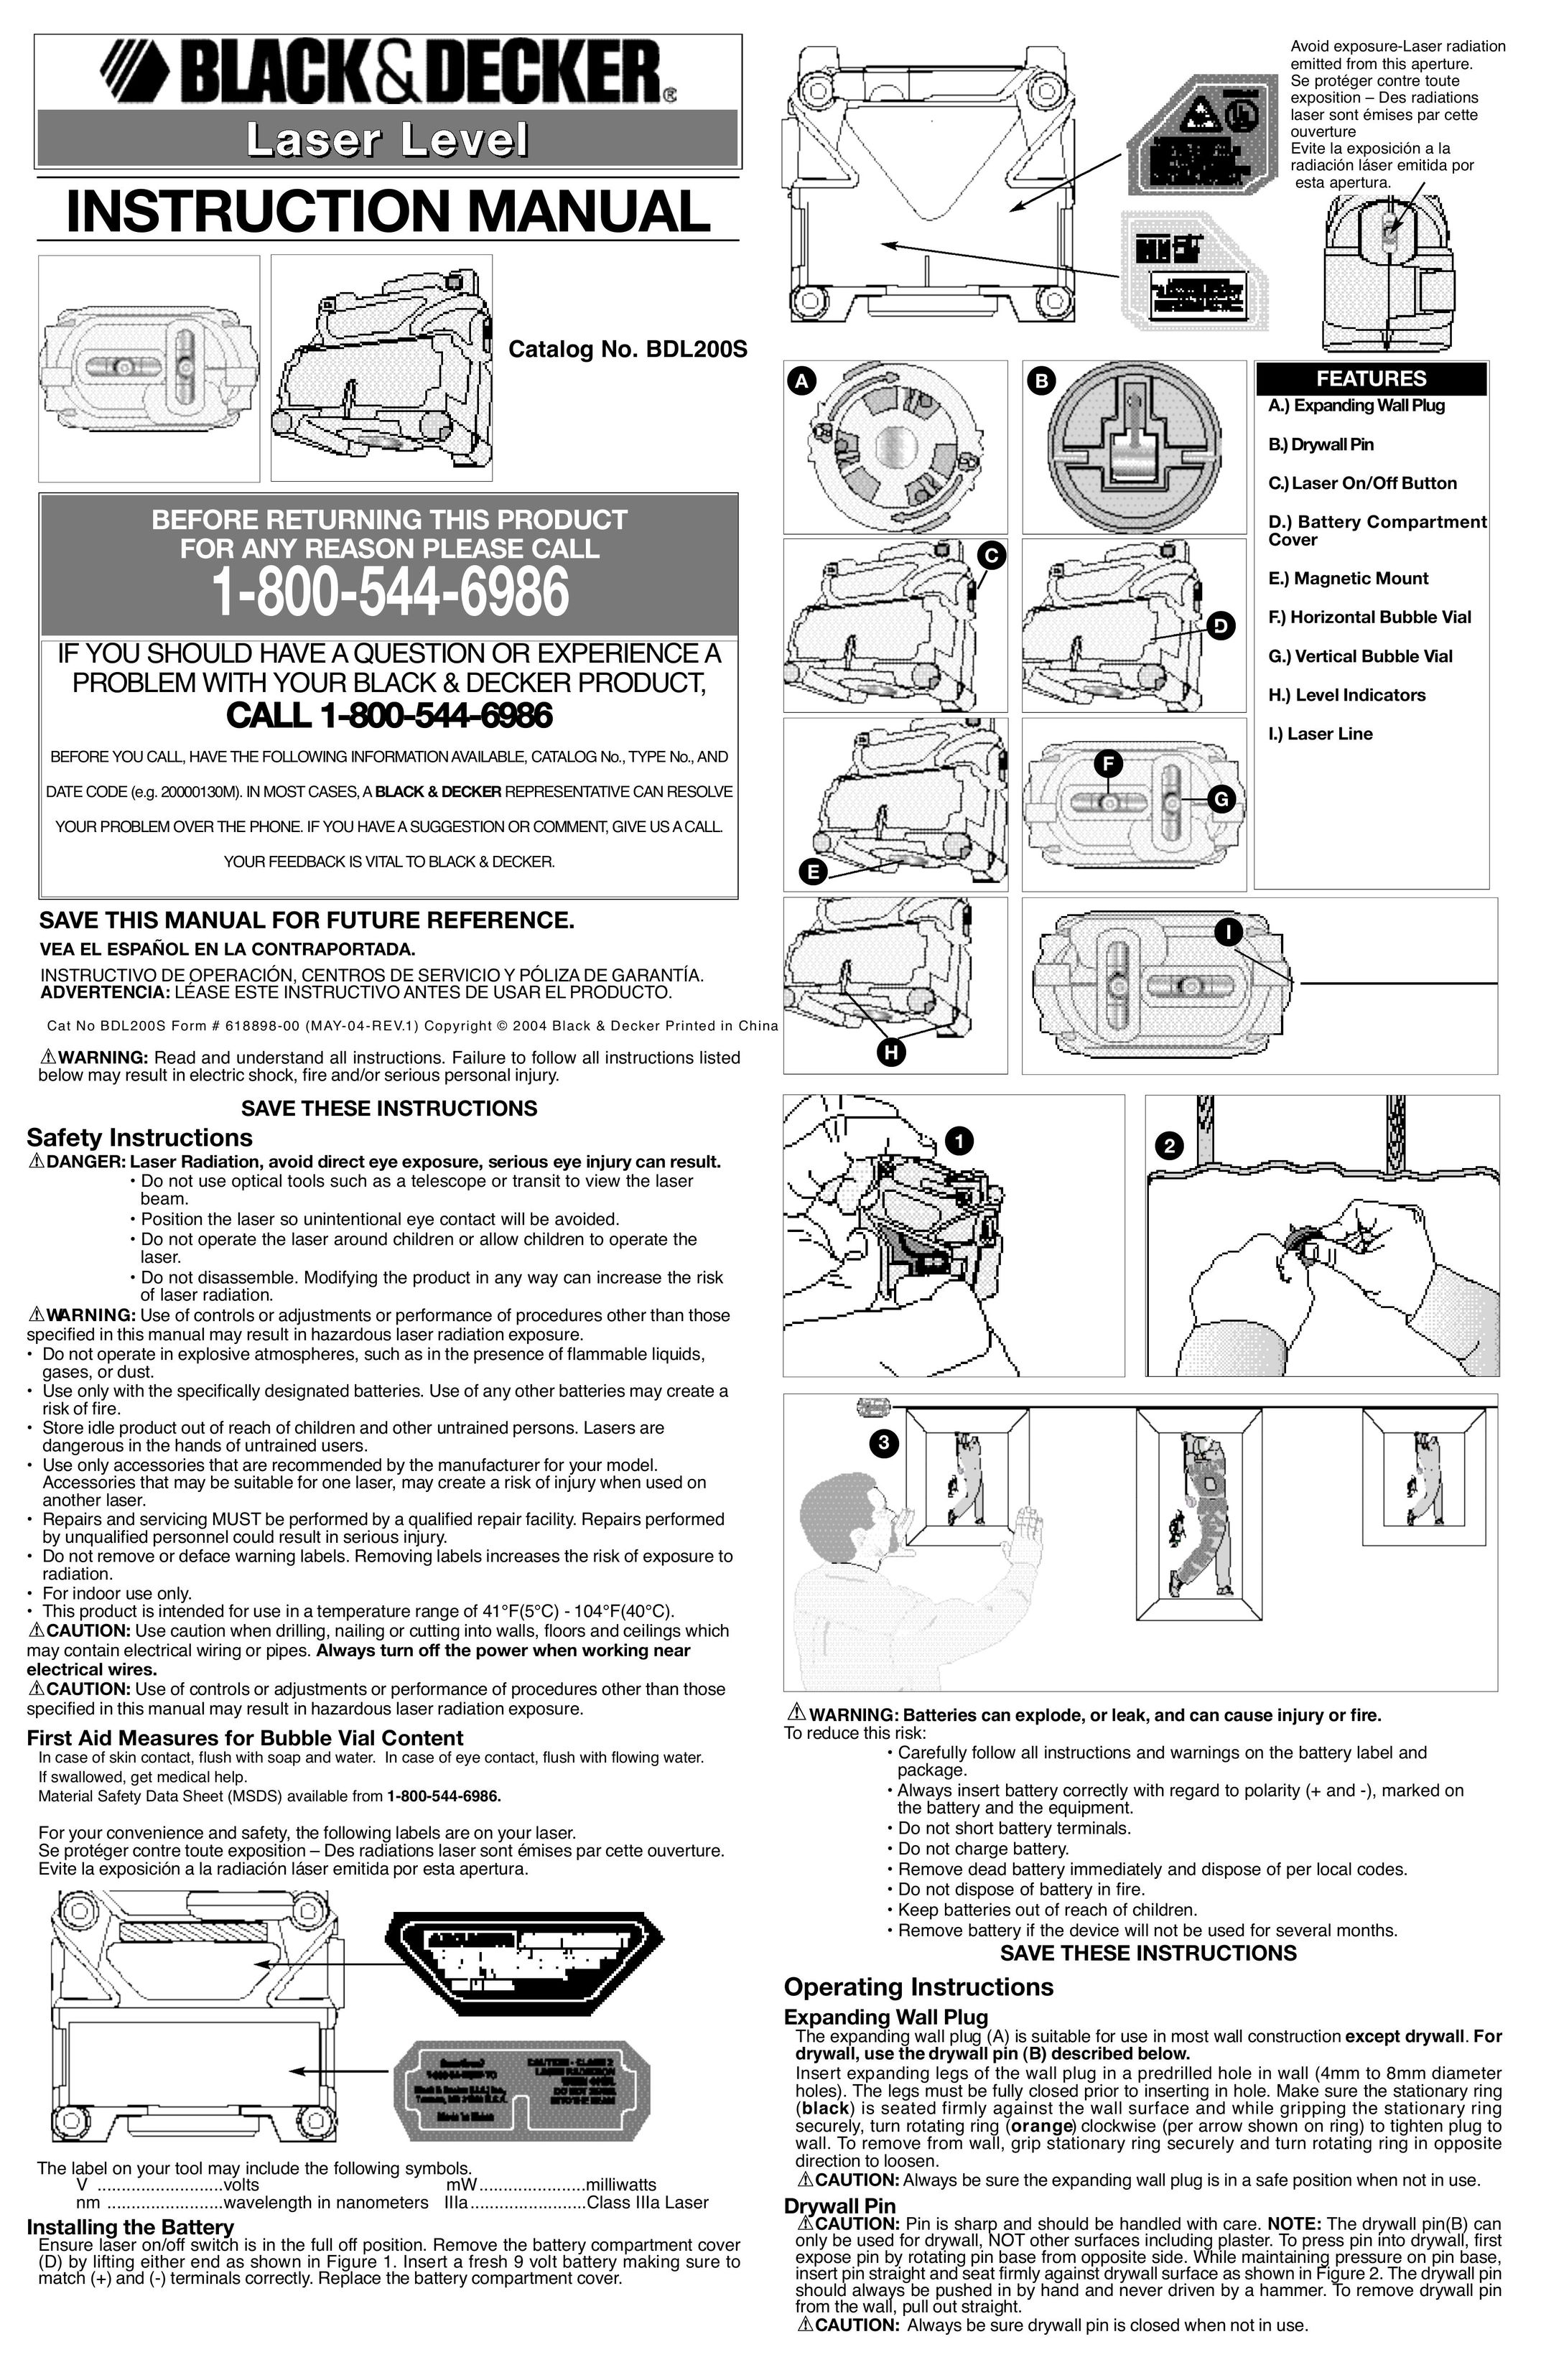 Black & Decker 618898-00 Laser Level User Manual